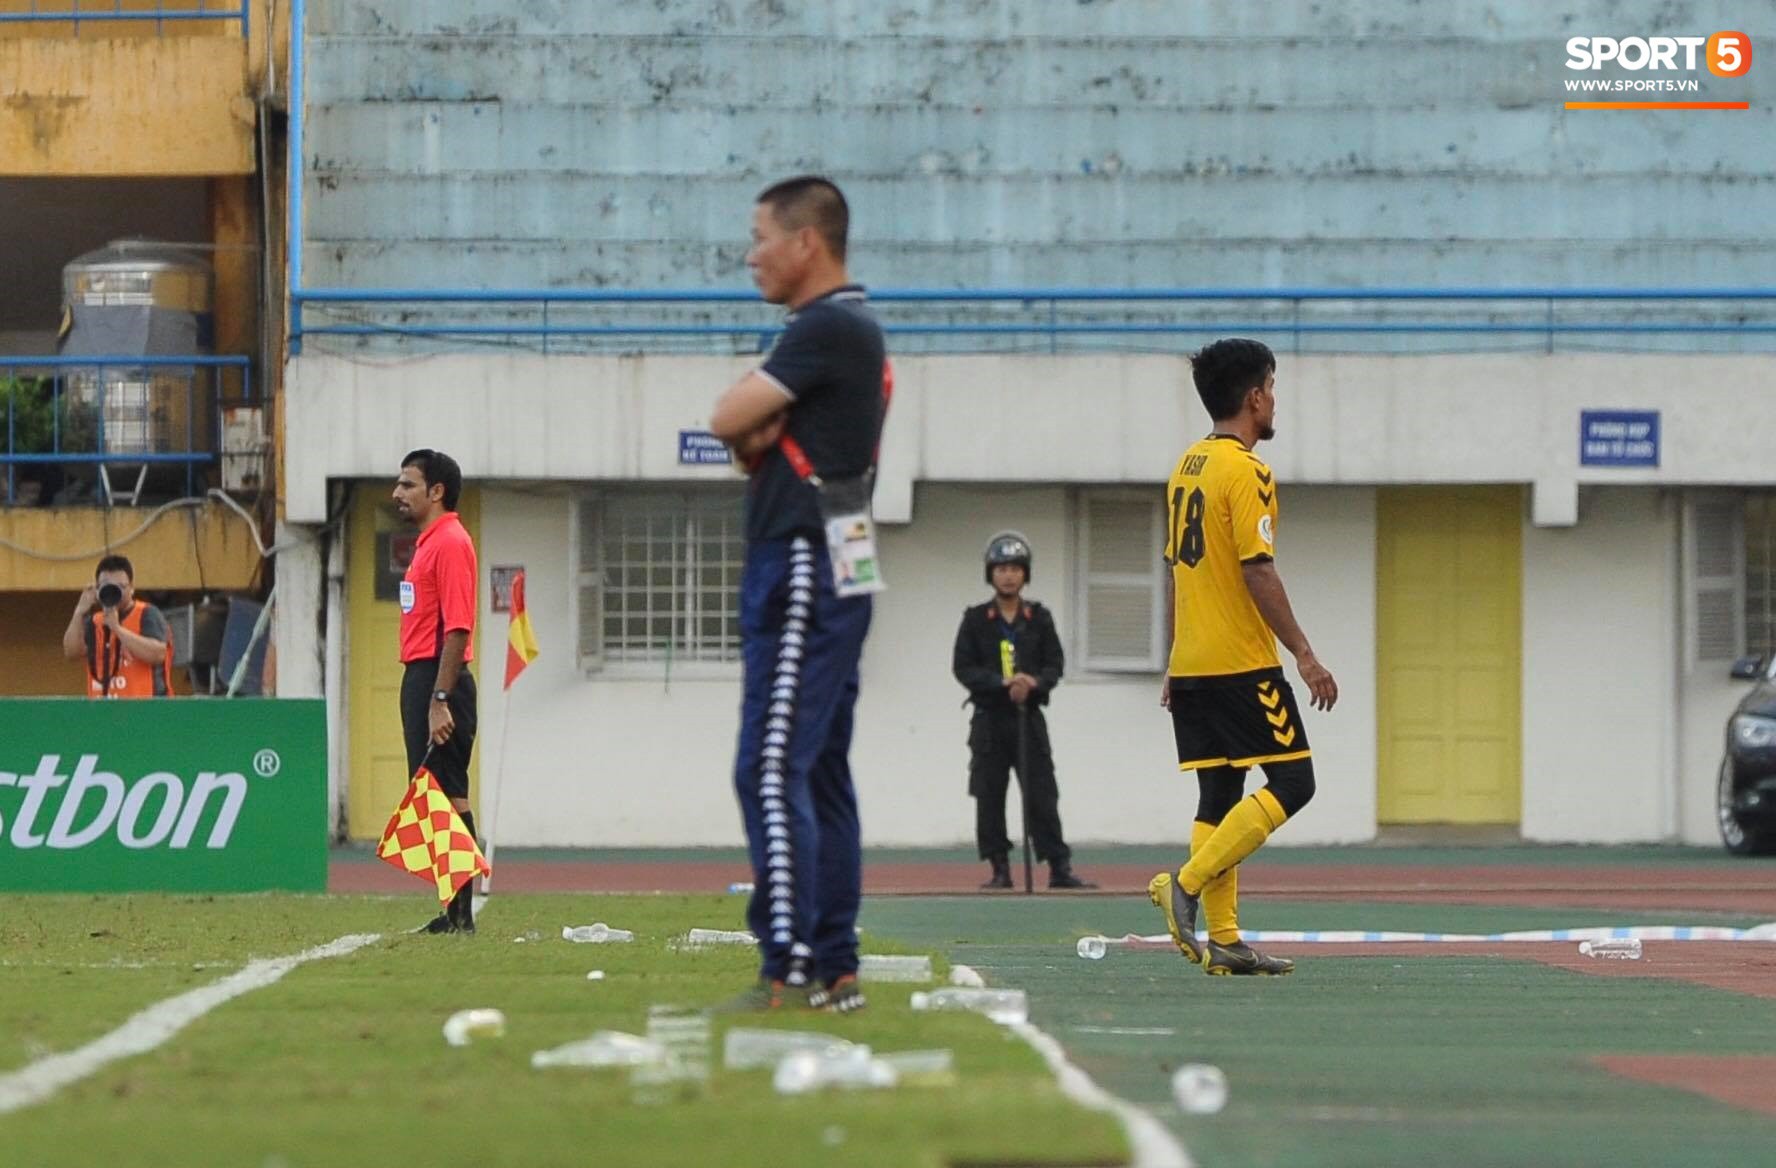 Dùng tiểu xảo với Đình Trọng, tiền vệ Singapore phải nhận thẻ đỏ ngậm ngùi rời sân - Ảnh 2.